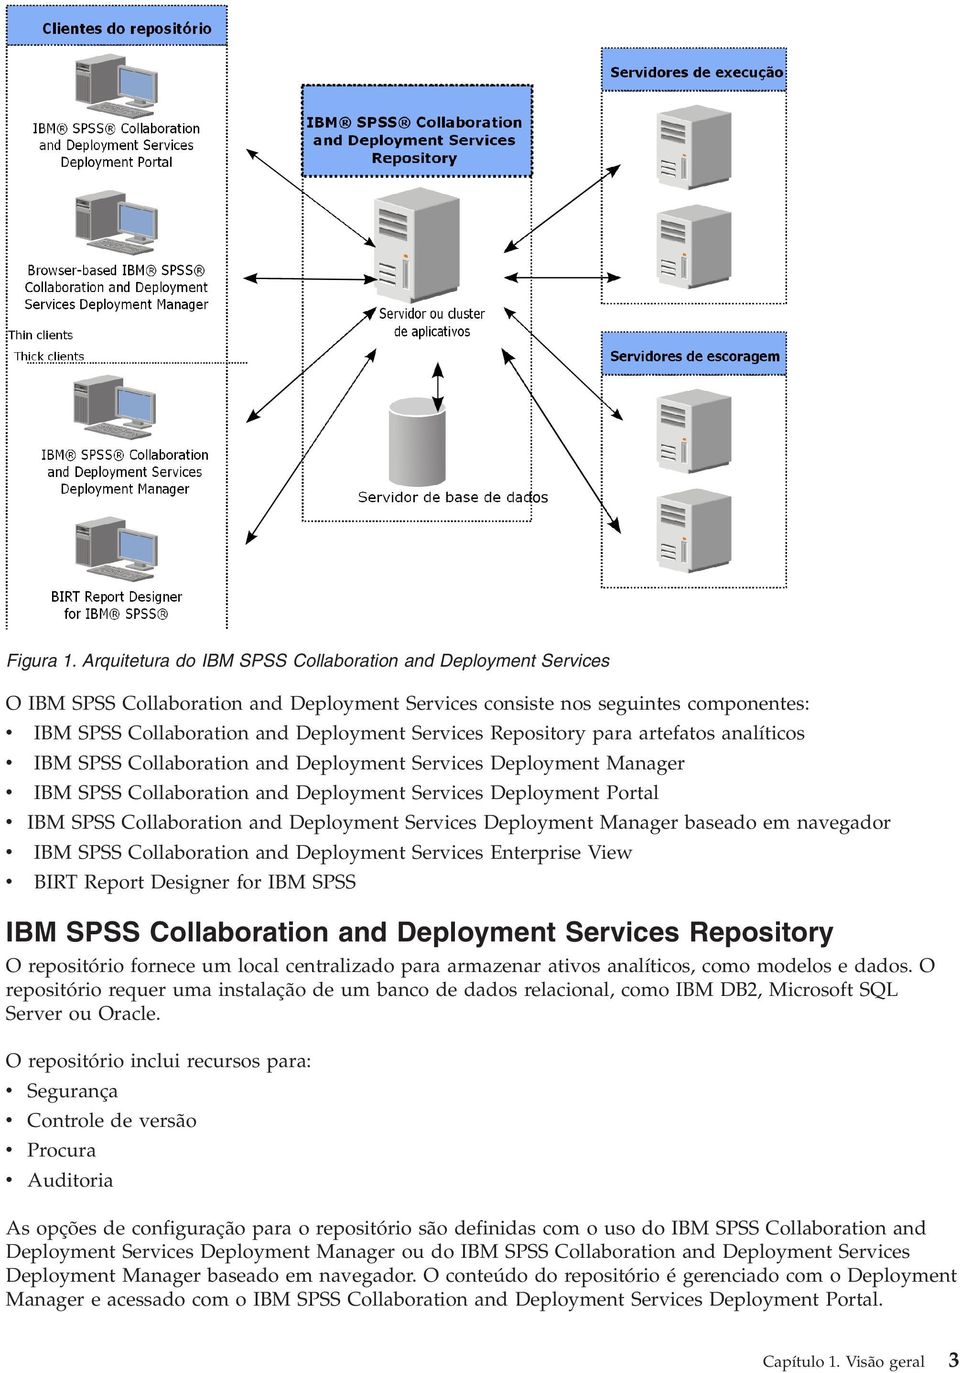 Repository para artefatos analíticos v IBM SPSS Collaboration and Deployment Services Deployment Manager v IBM SPSS Collaboration and Deployment Services Deployment Portal v IBM SPSS Collaboration